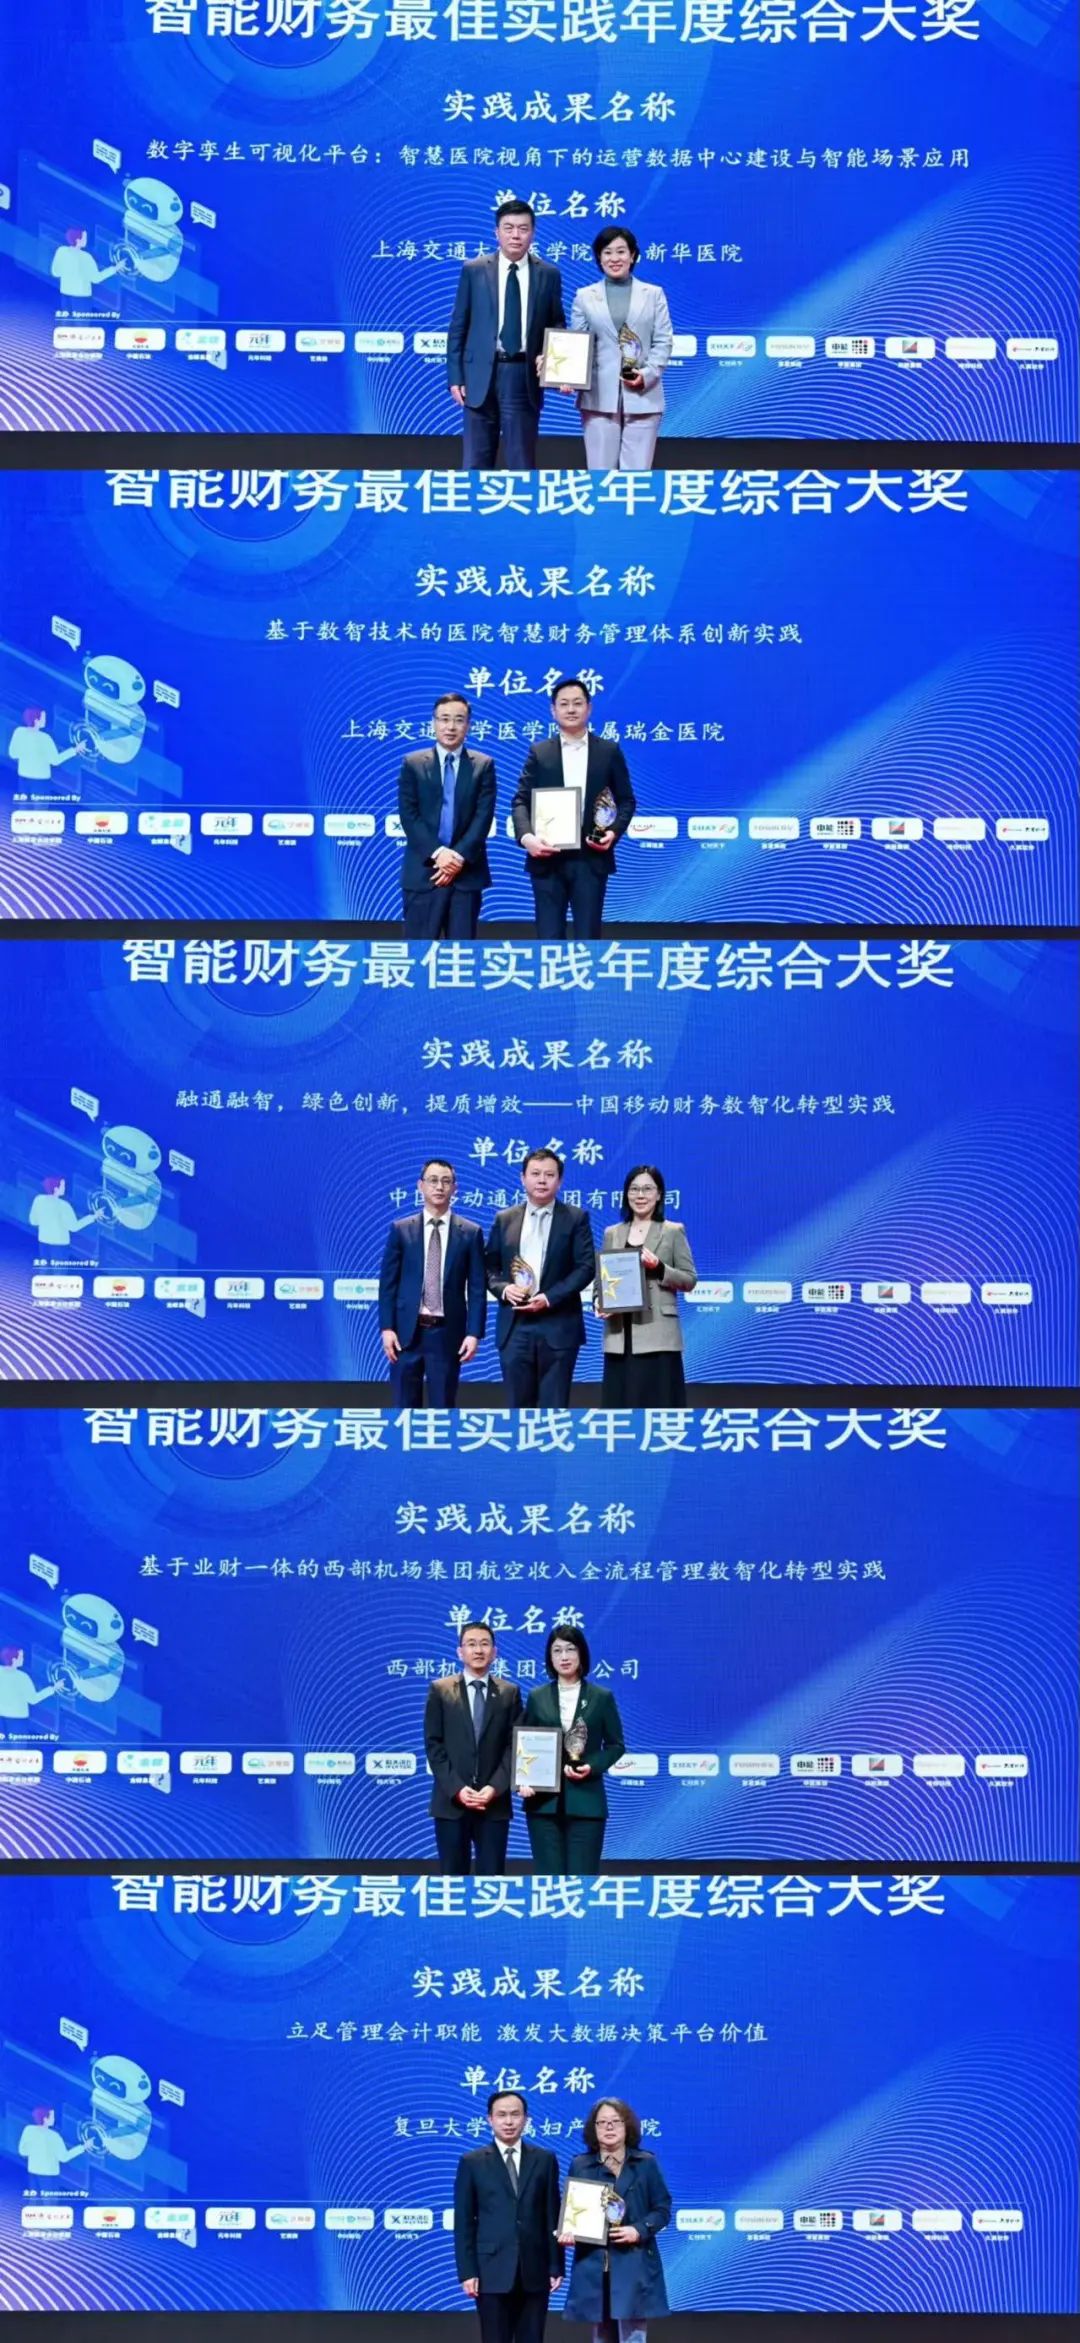 上海国家会计学院第六届智能财务高峰论坛成功举办_智能财务_17